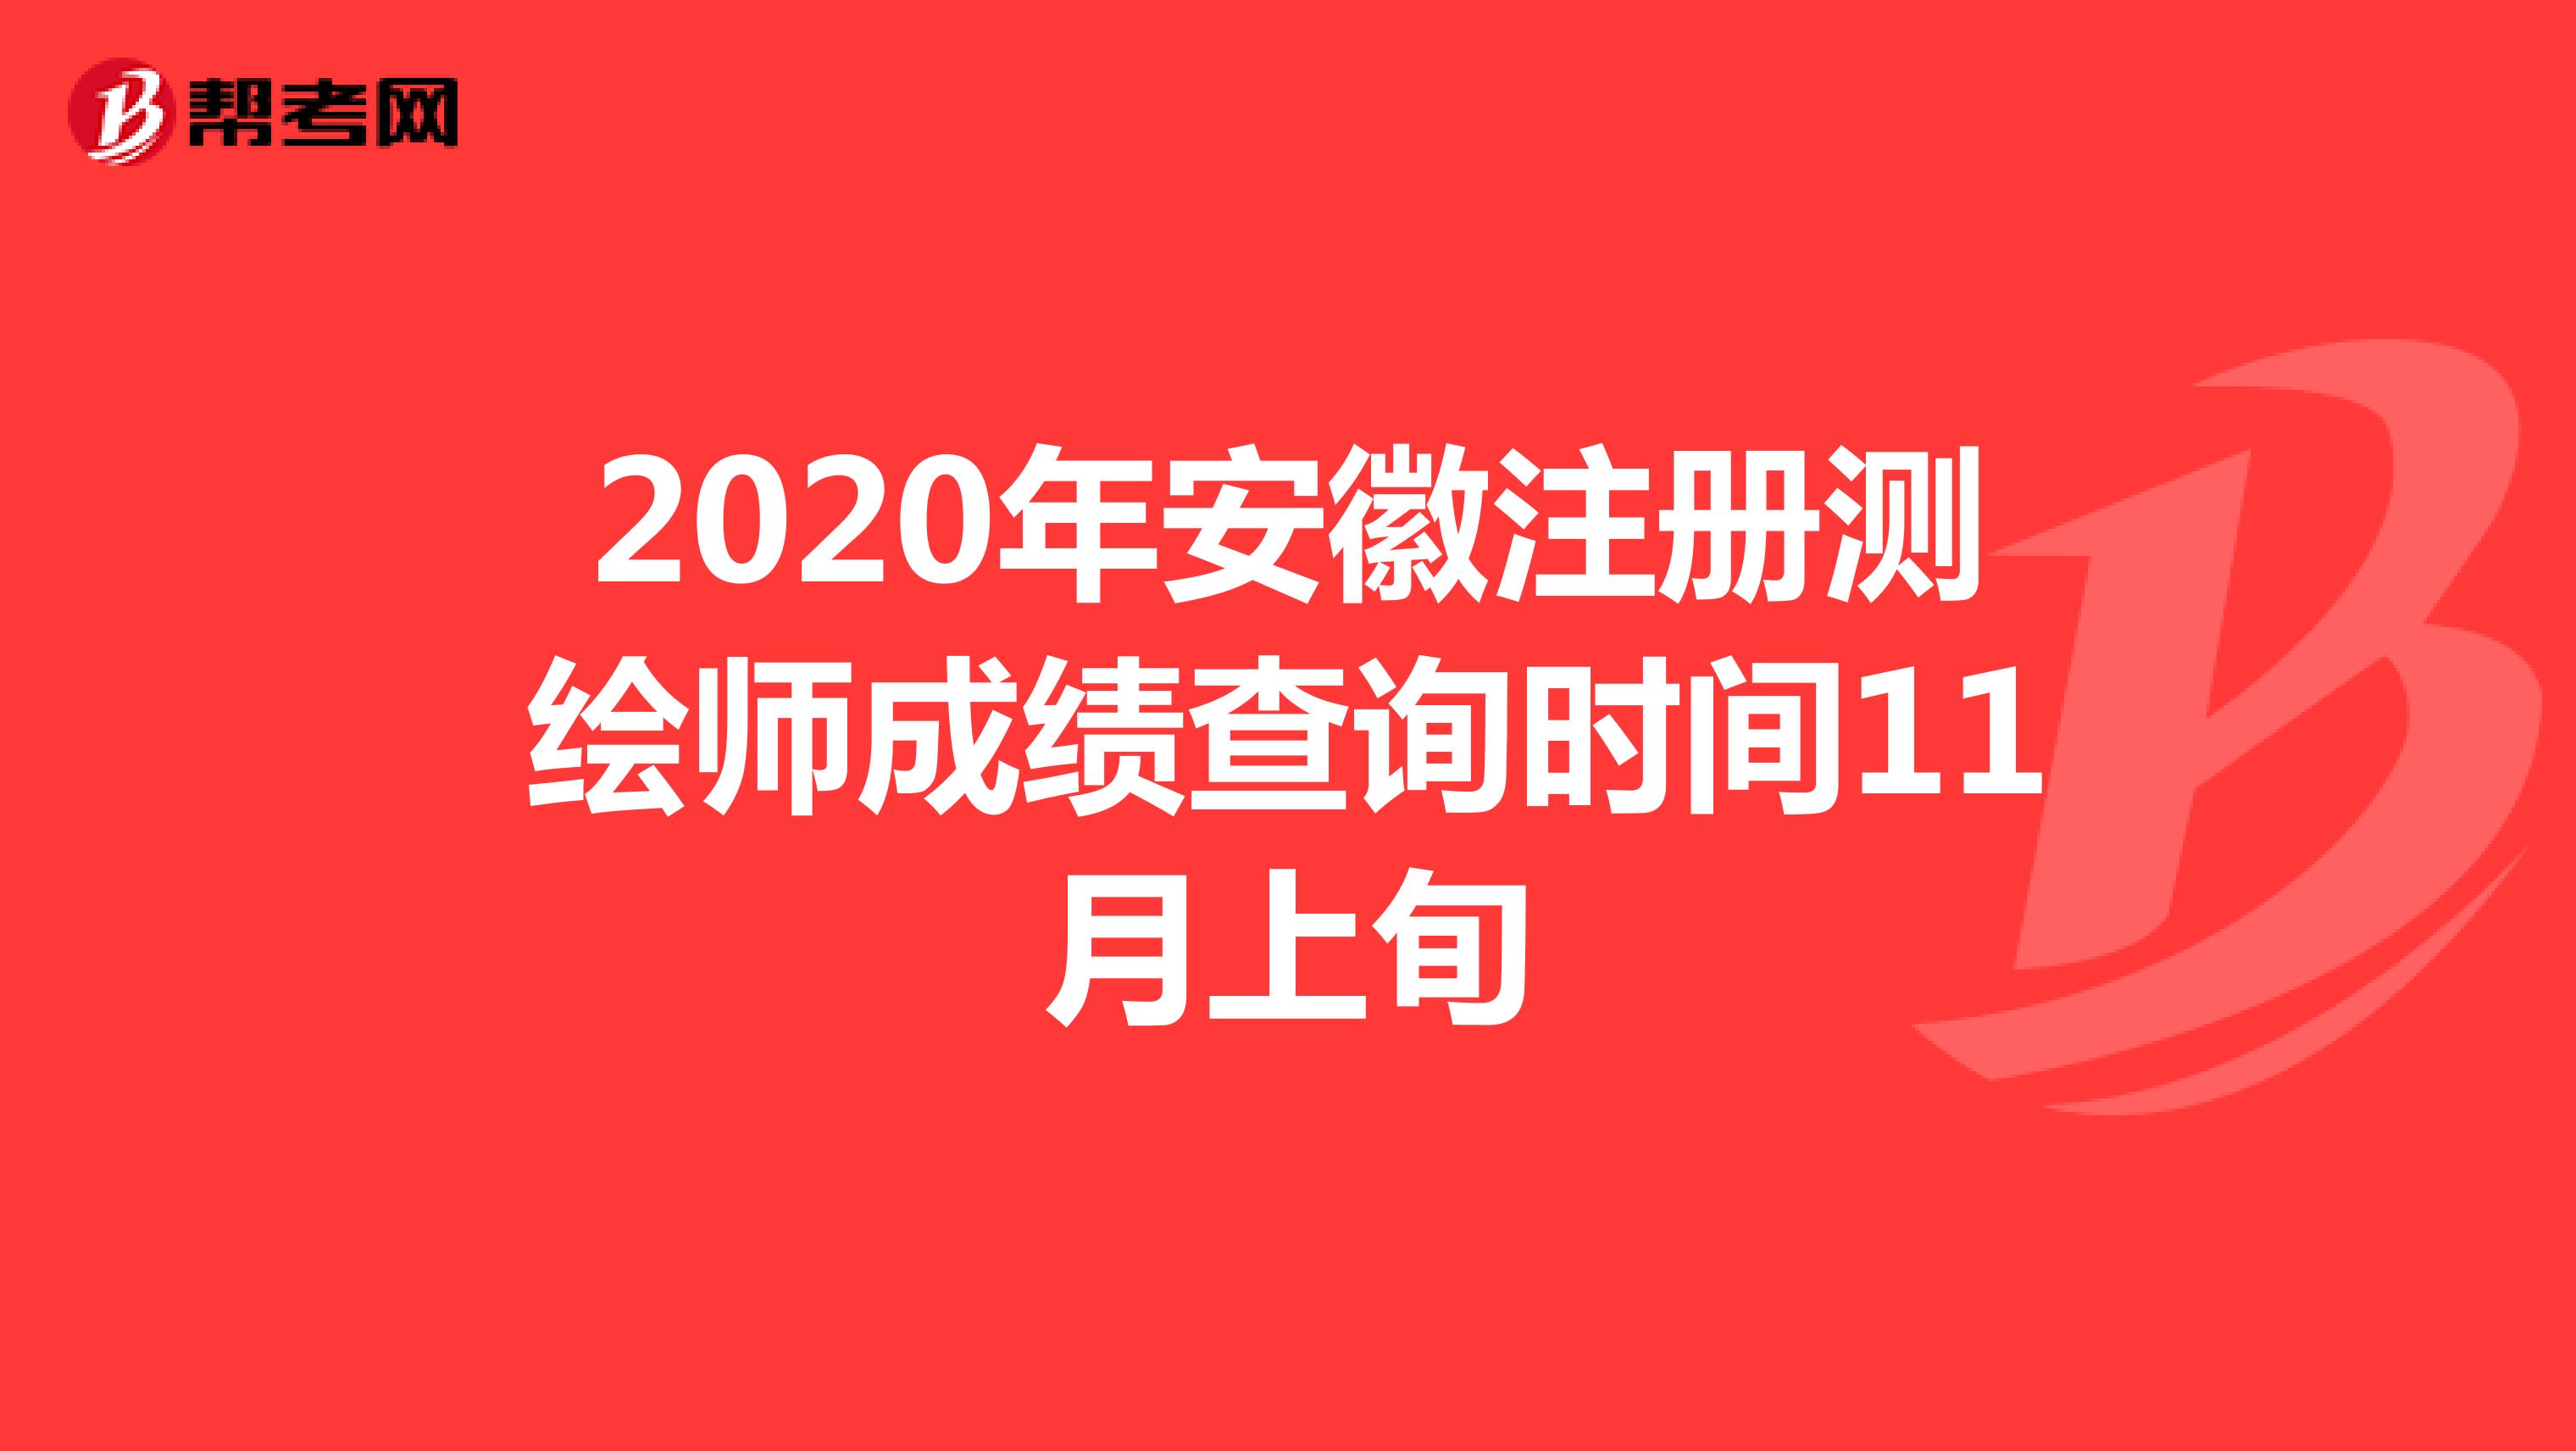 2020年安徽注册测绘师成绩查询时间11月上旬